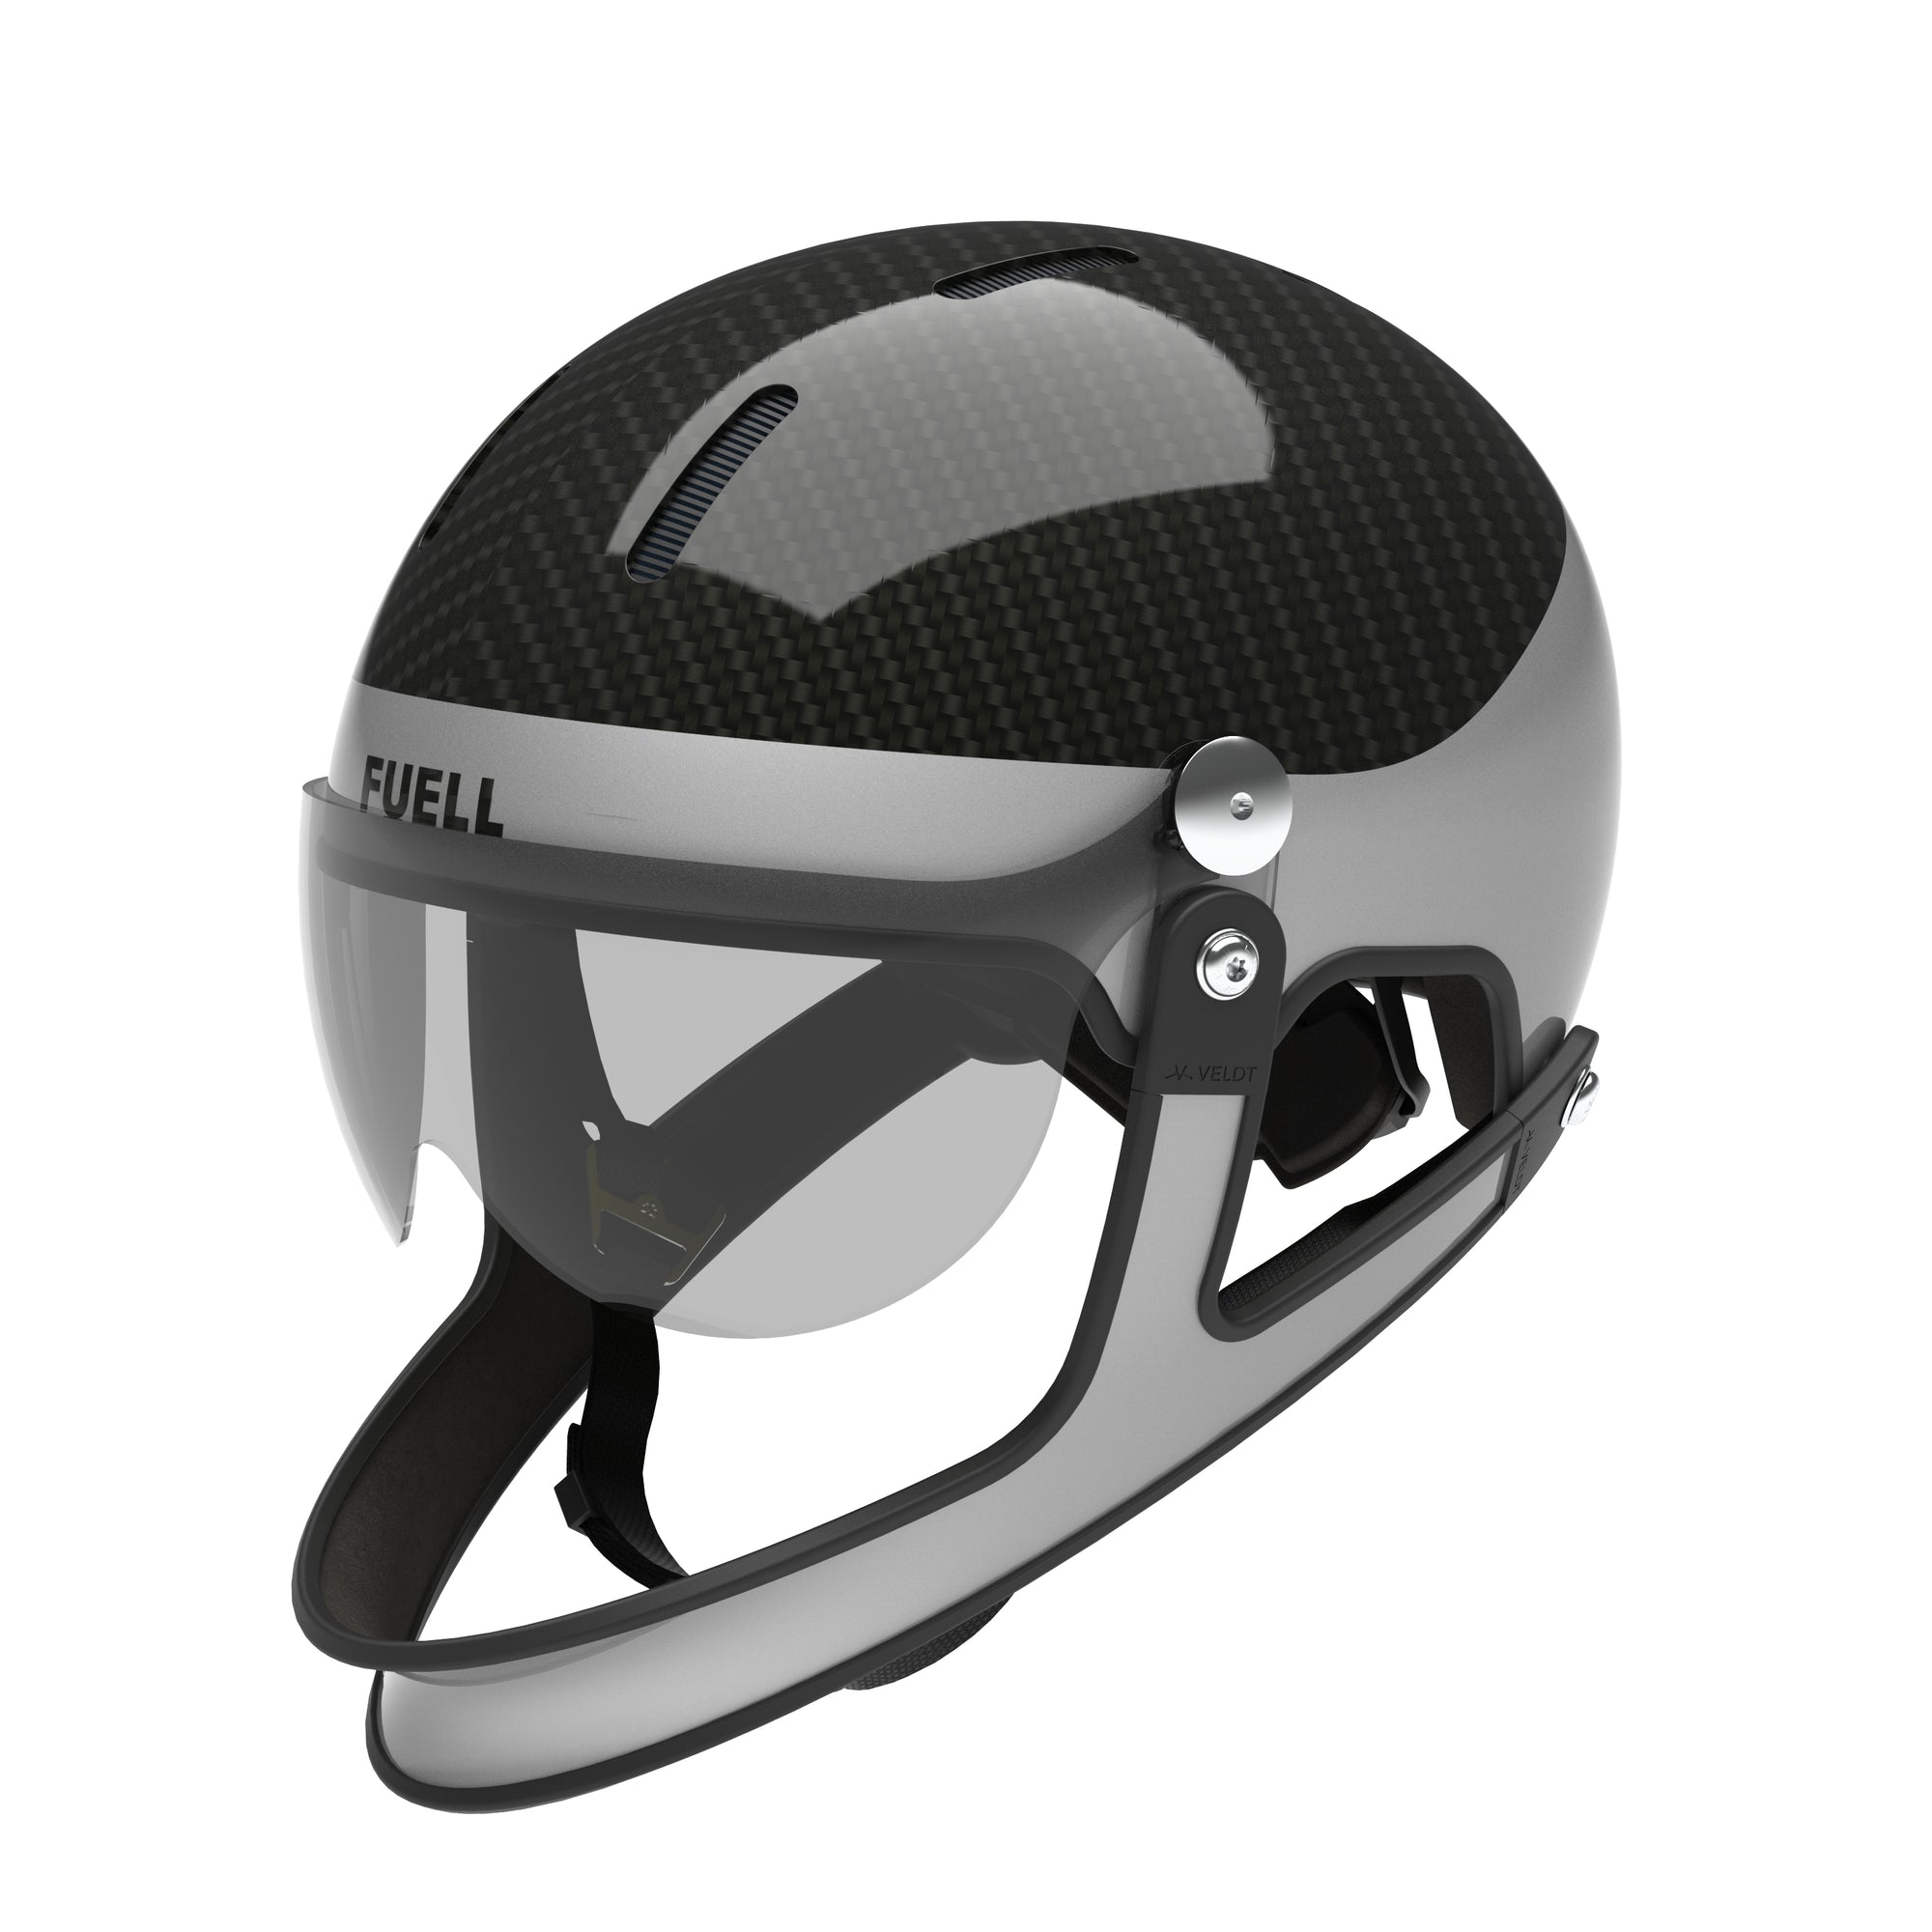 FUELL x VELDT Carbon E-bike helmet - FULL FACE